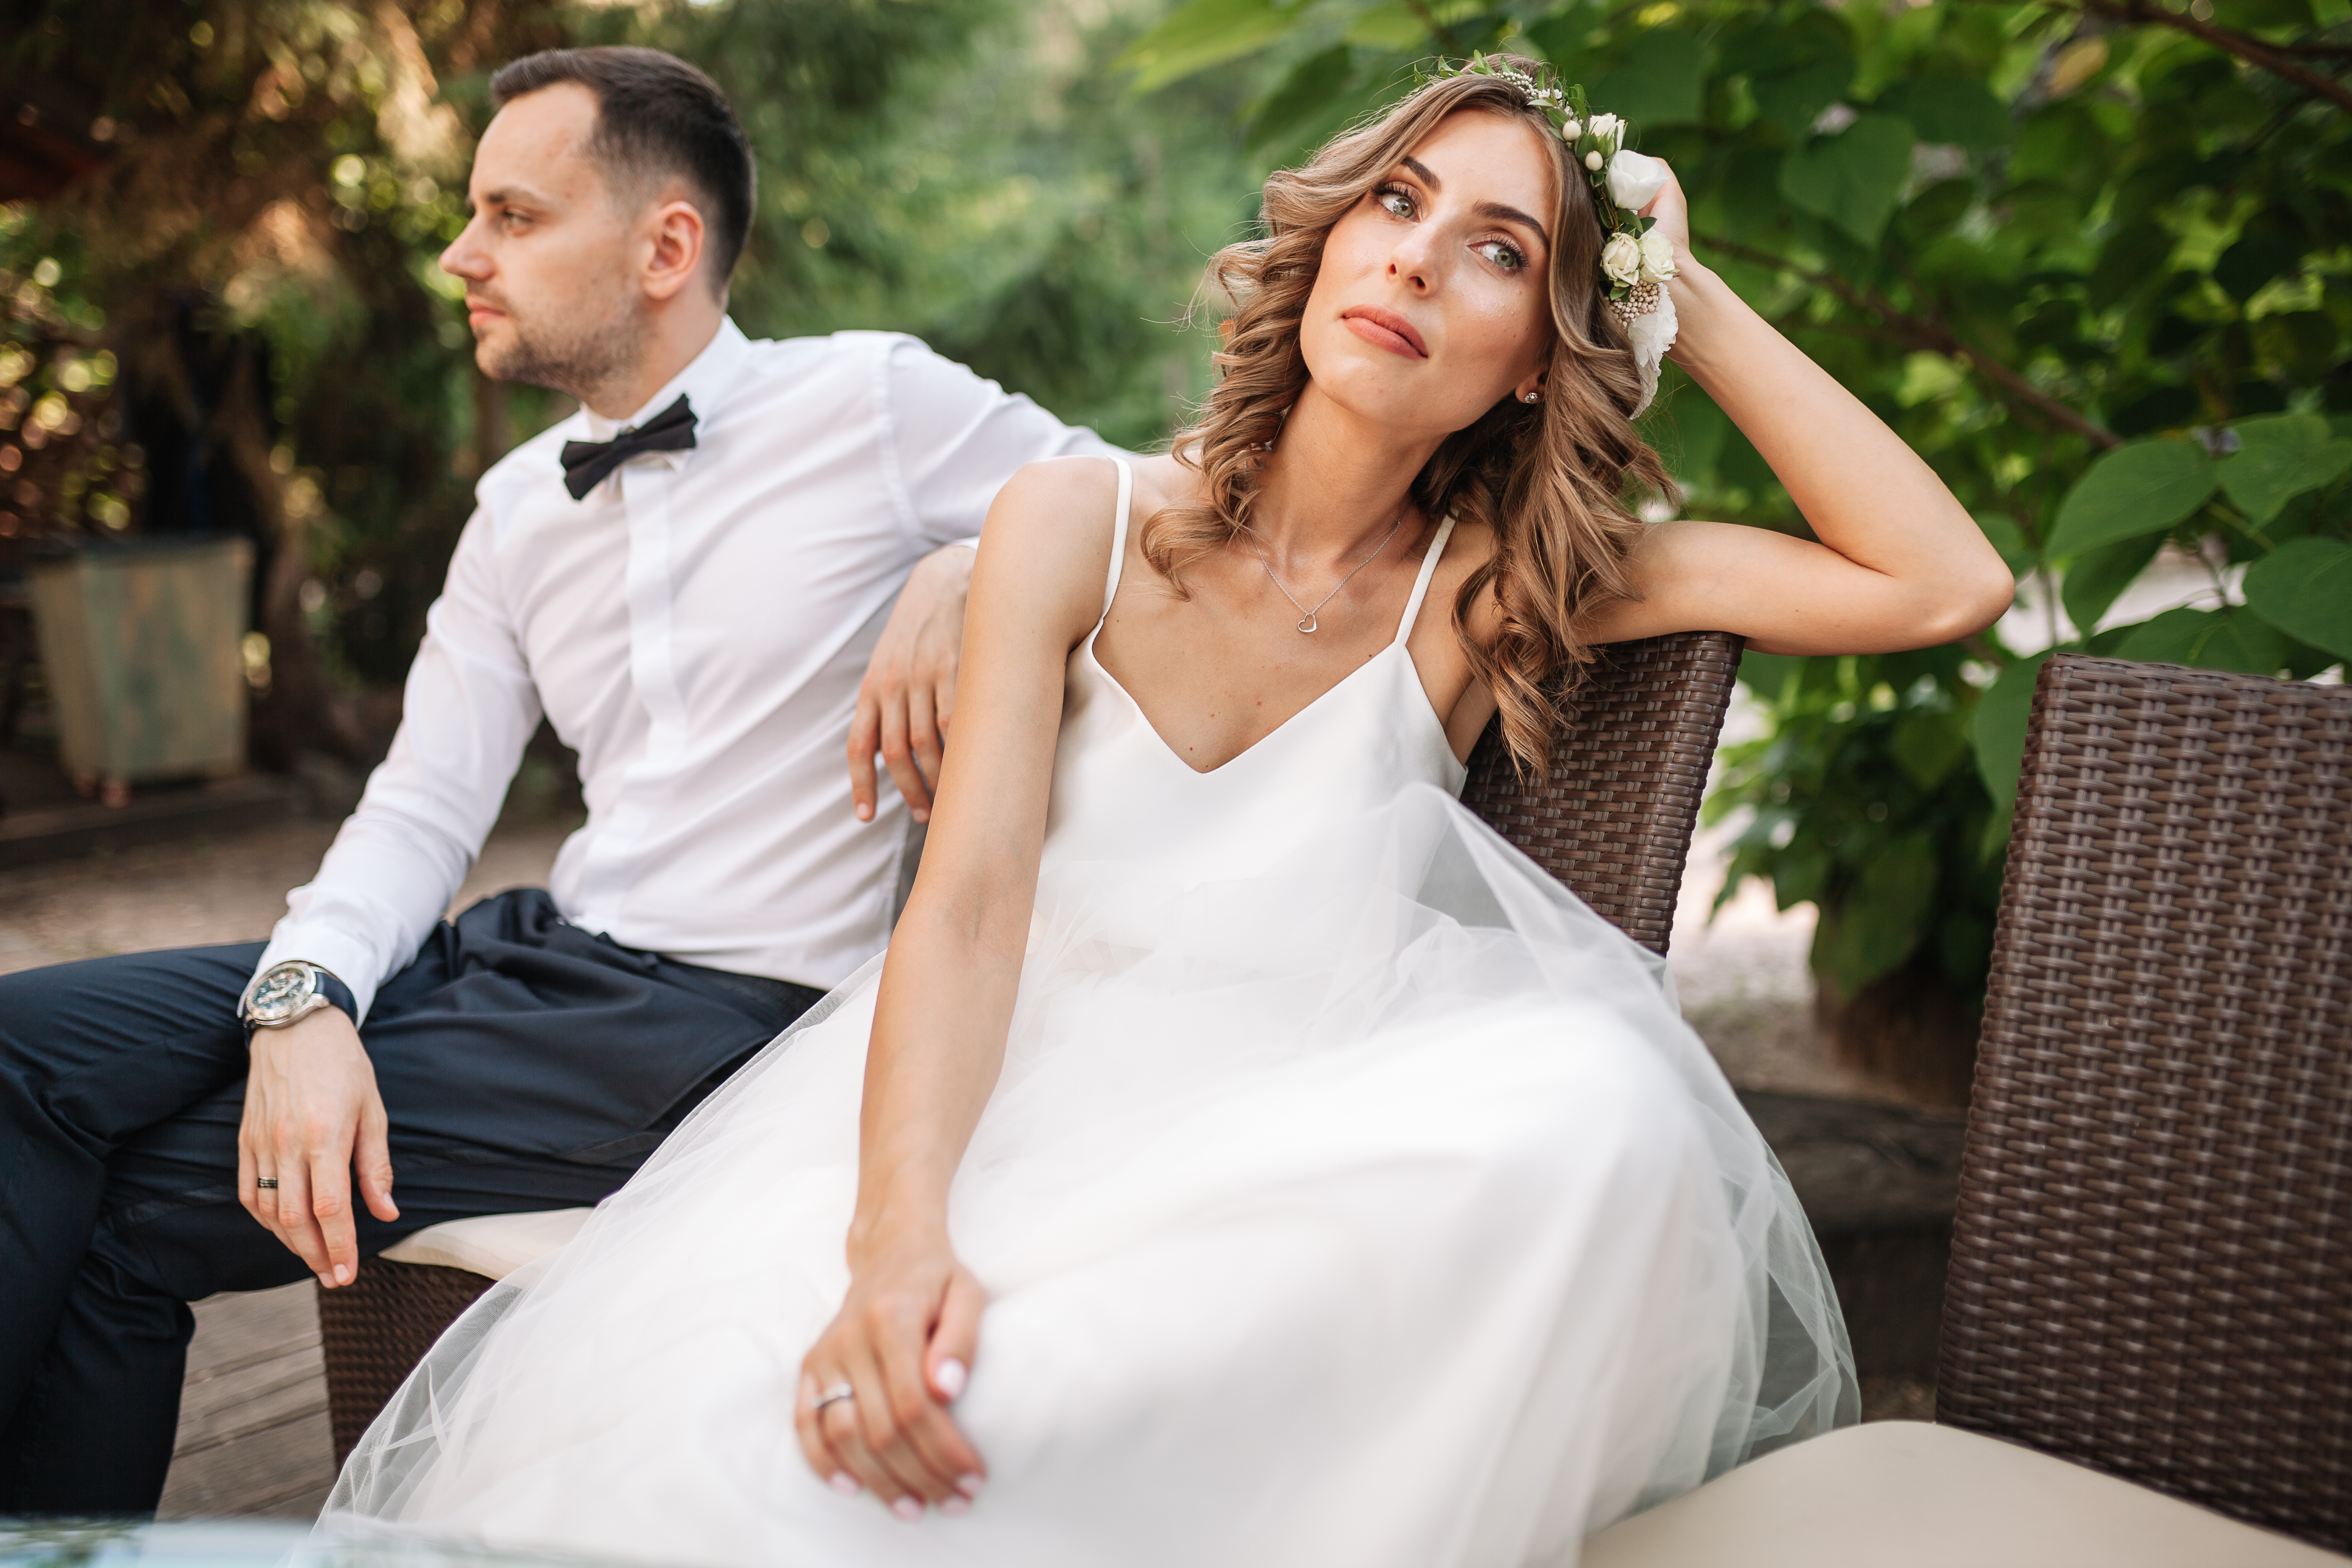 Una novia y un novio que no se hablan | Fuente: Shutterstock